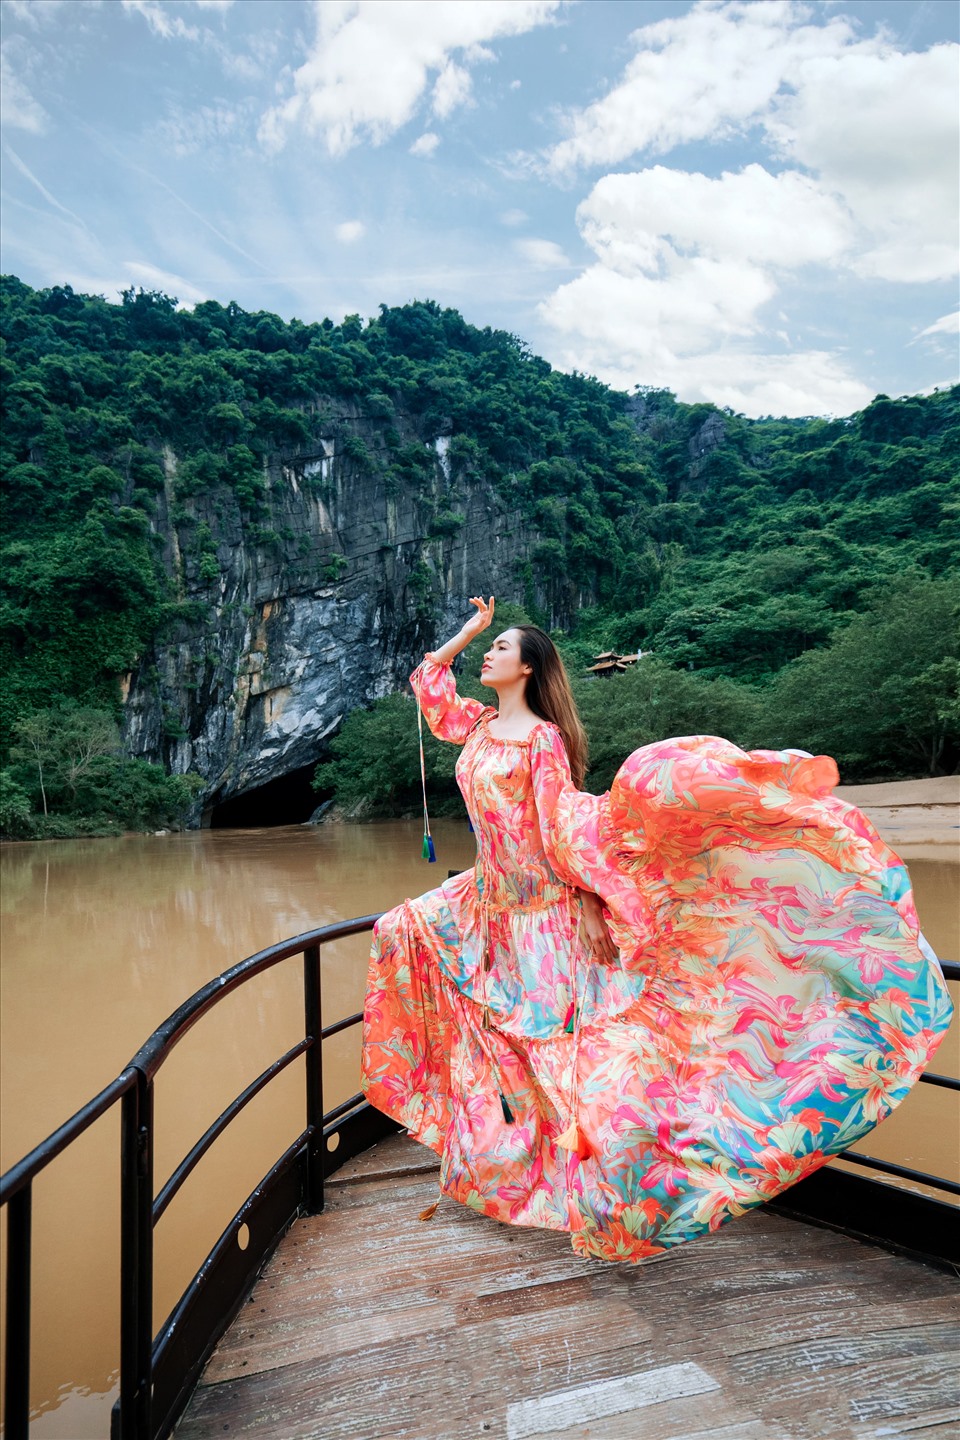 Á hậu Hoàng My, người đã đại diện cho Việt Nam tại nhiều cuộc thi sắc đẹp quốc tế, là một trong những quý cô được yêu thích và có lượng fan hâm mộ đông đảo. Hãy khám phá vẻ đẹp và phong cách độc đáo của cô ấy trong bộ sưu tập ảnh của chúng tôi.